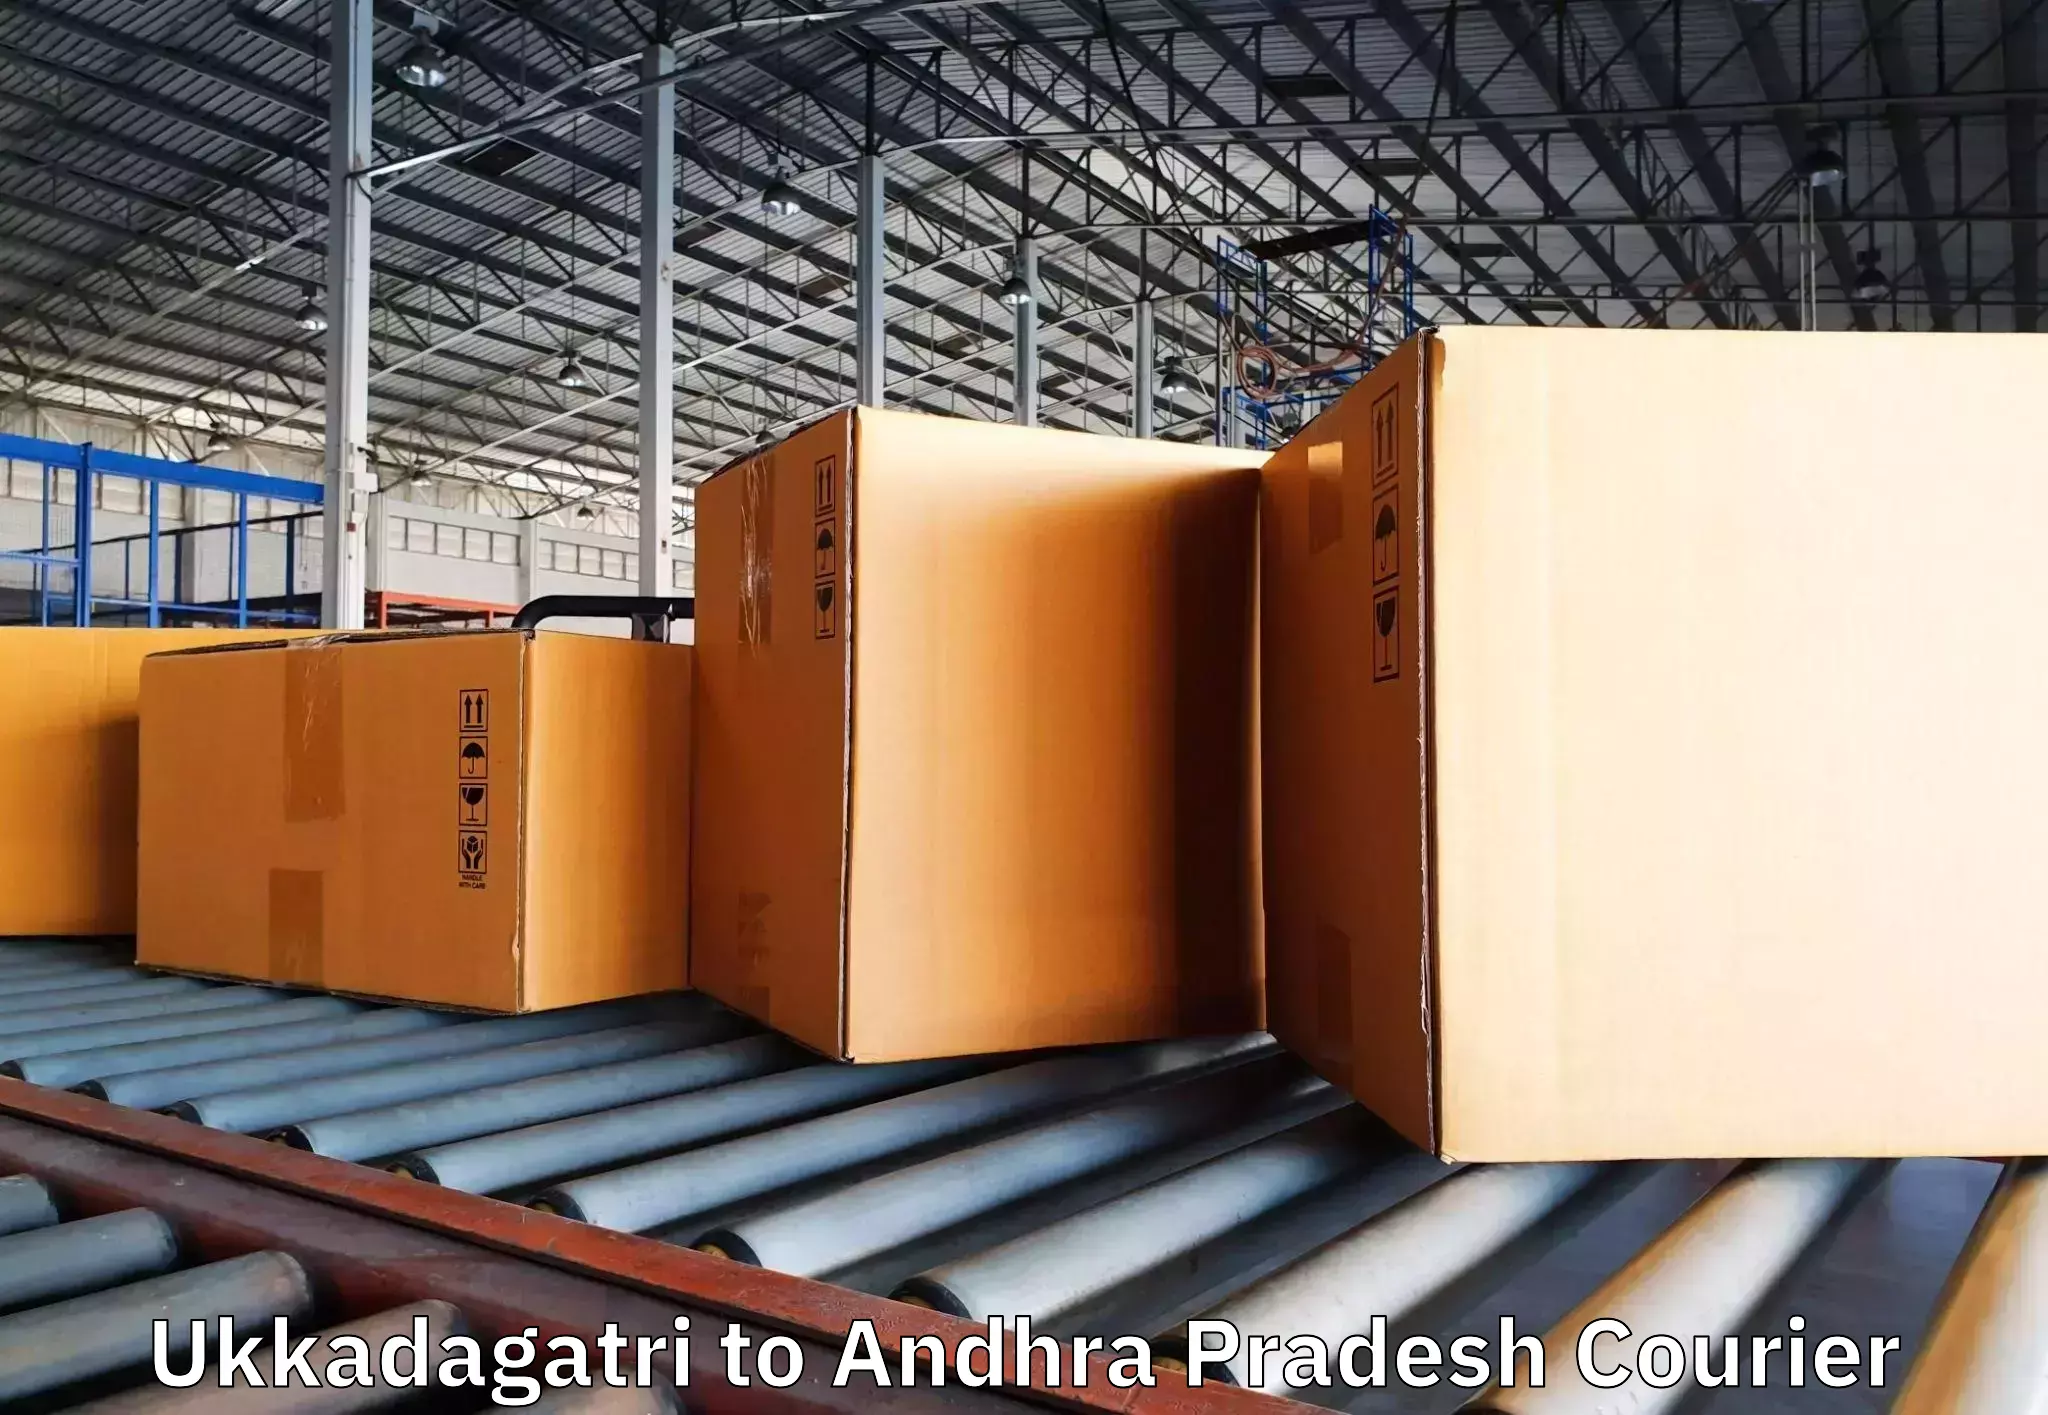 Furniture moving specialists Ukkadagatri to Gampalagudem